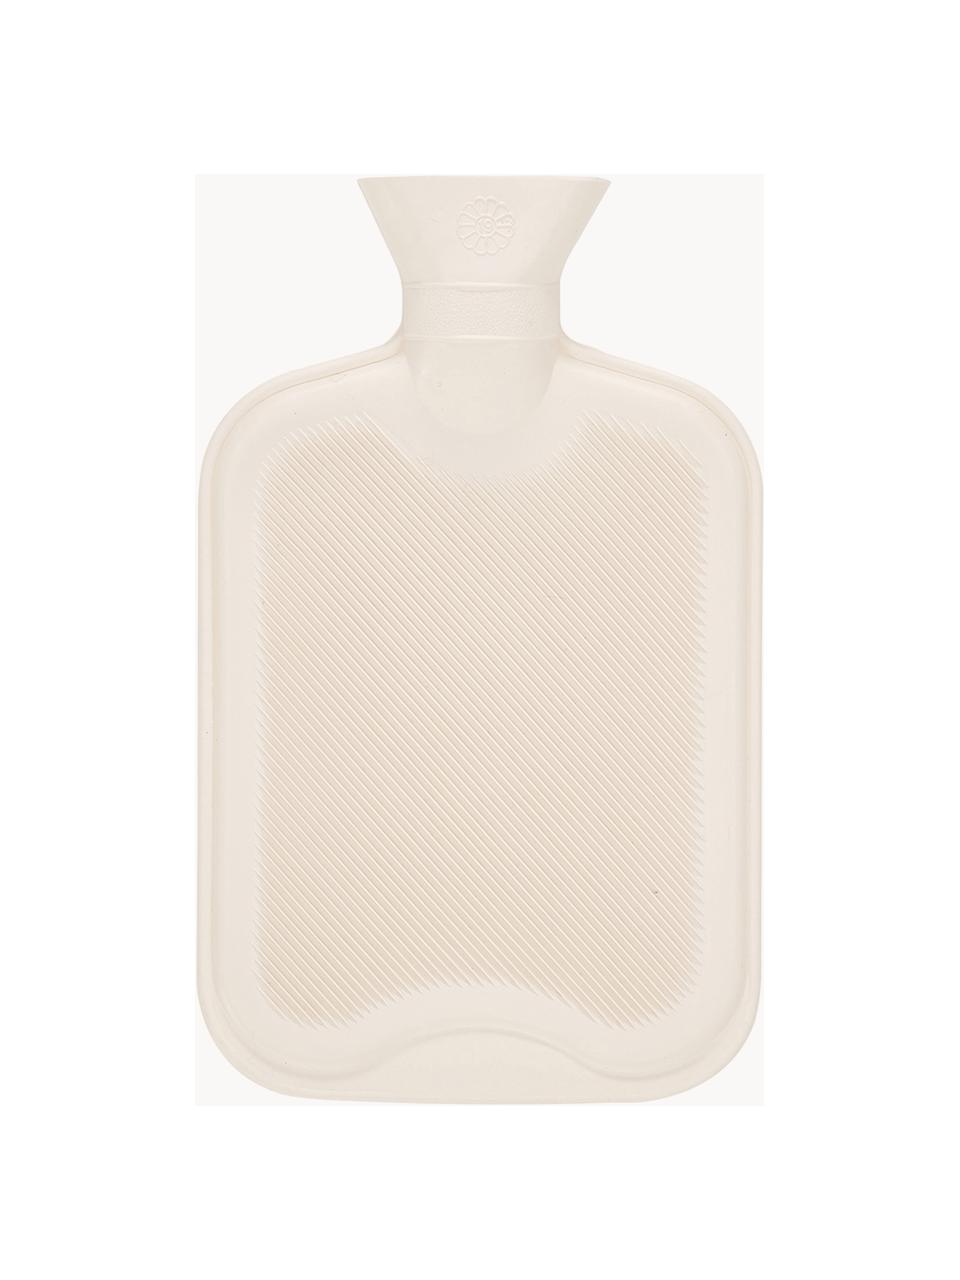 Kunstfell Wärmflasche Mette, Bezug: 100% Polyester, GRS-zerti, Weiss, B 20 x L 32 cm